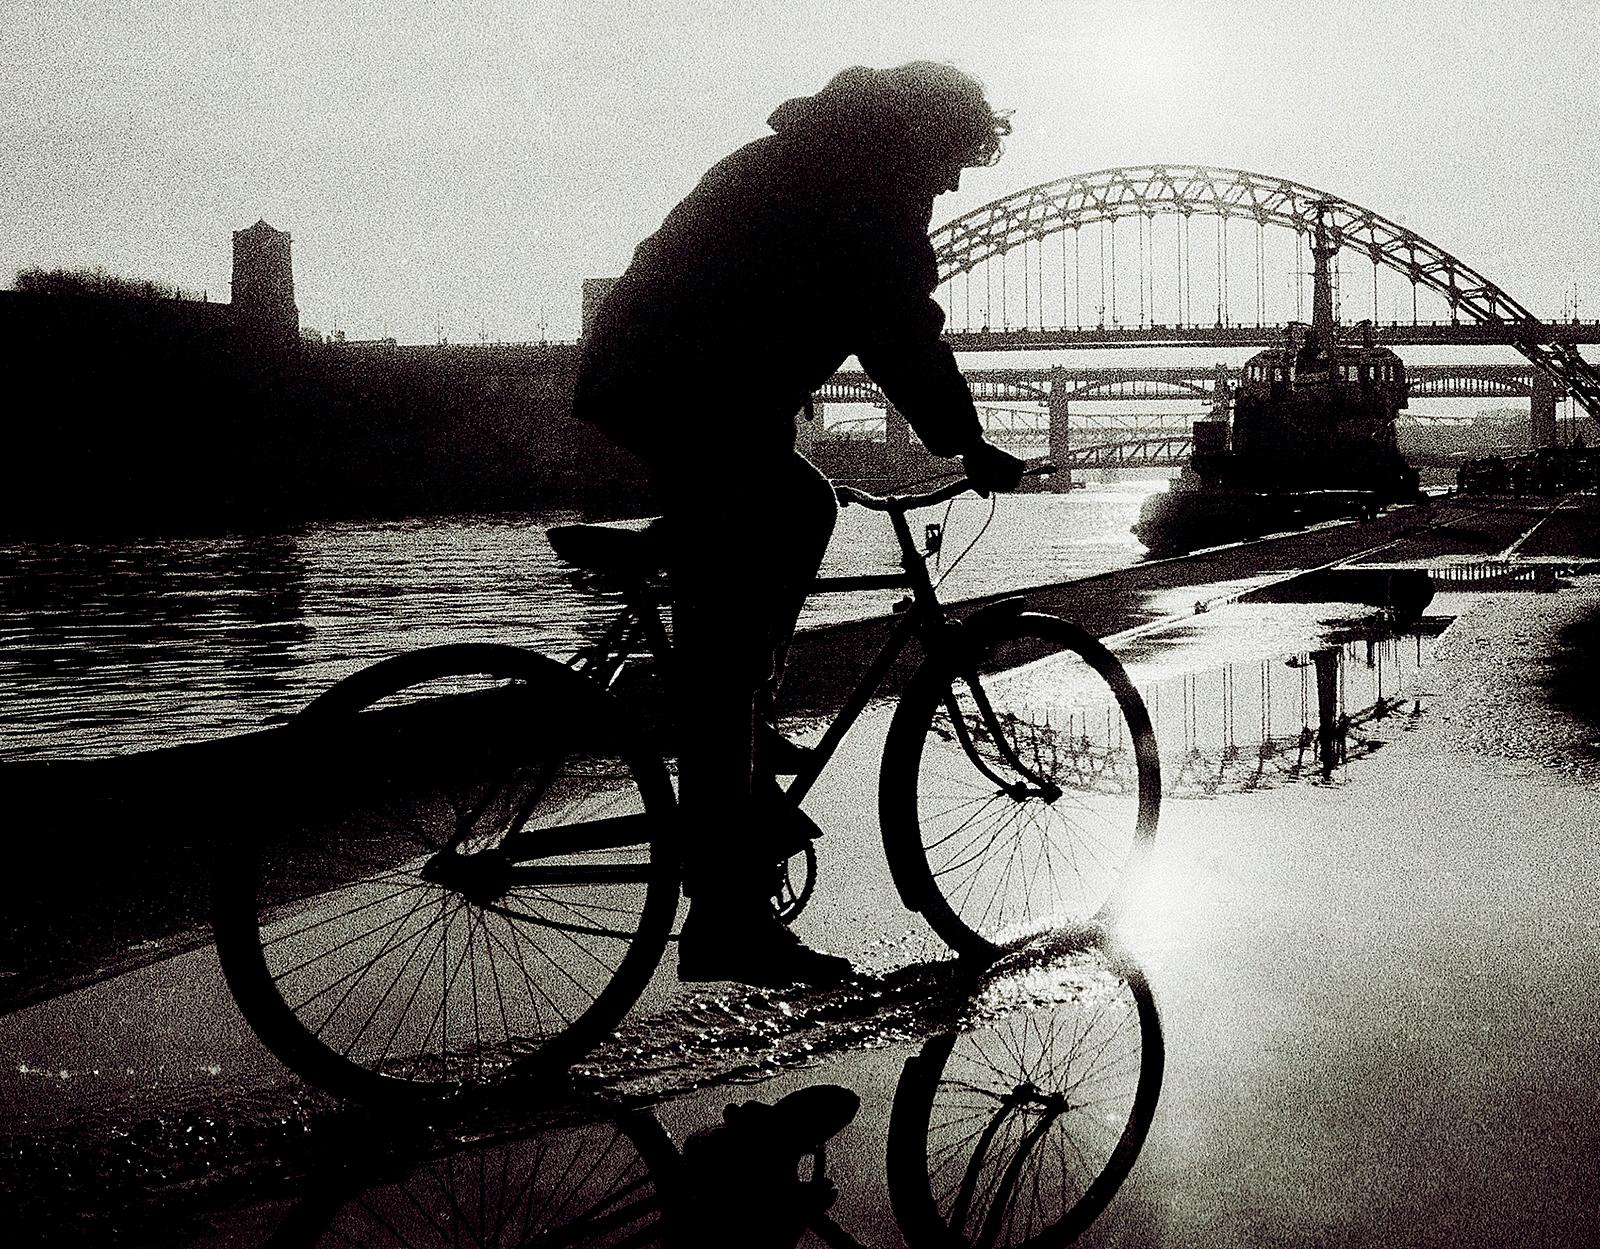 Newcastle - Impression d'œuvres d'art en édition limitée signée, photo en noir et blanc, City - Photograph de Ian Sanderson